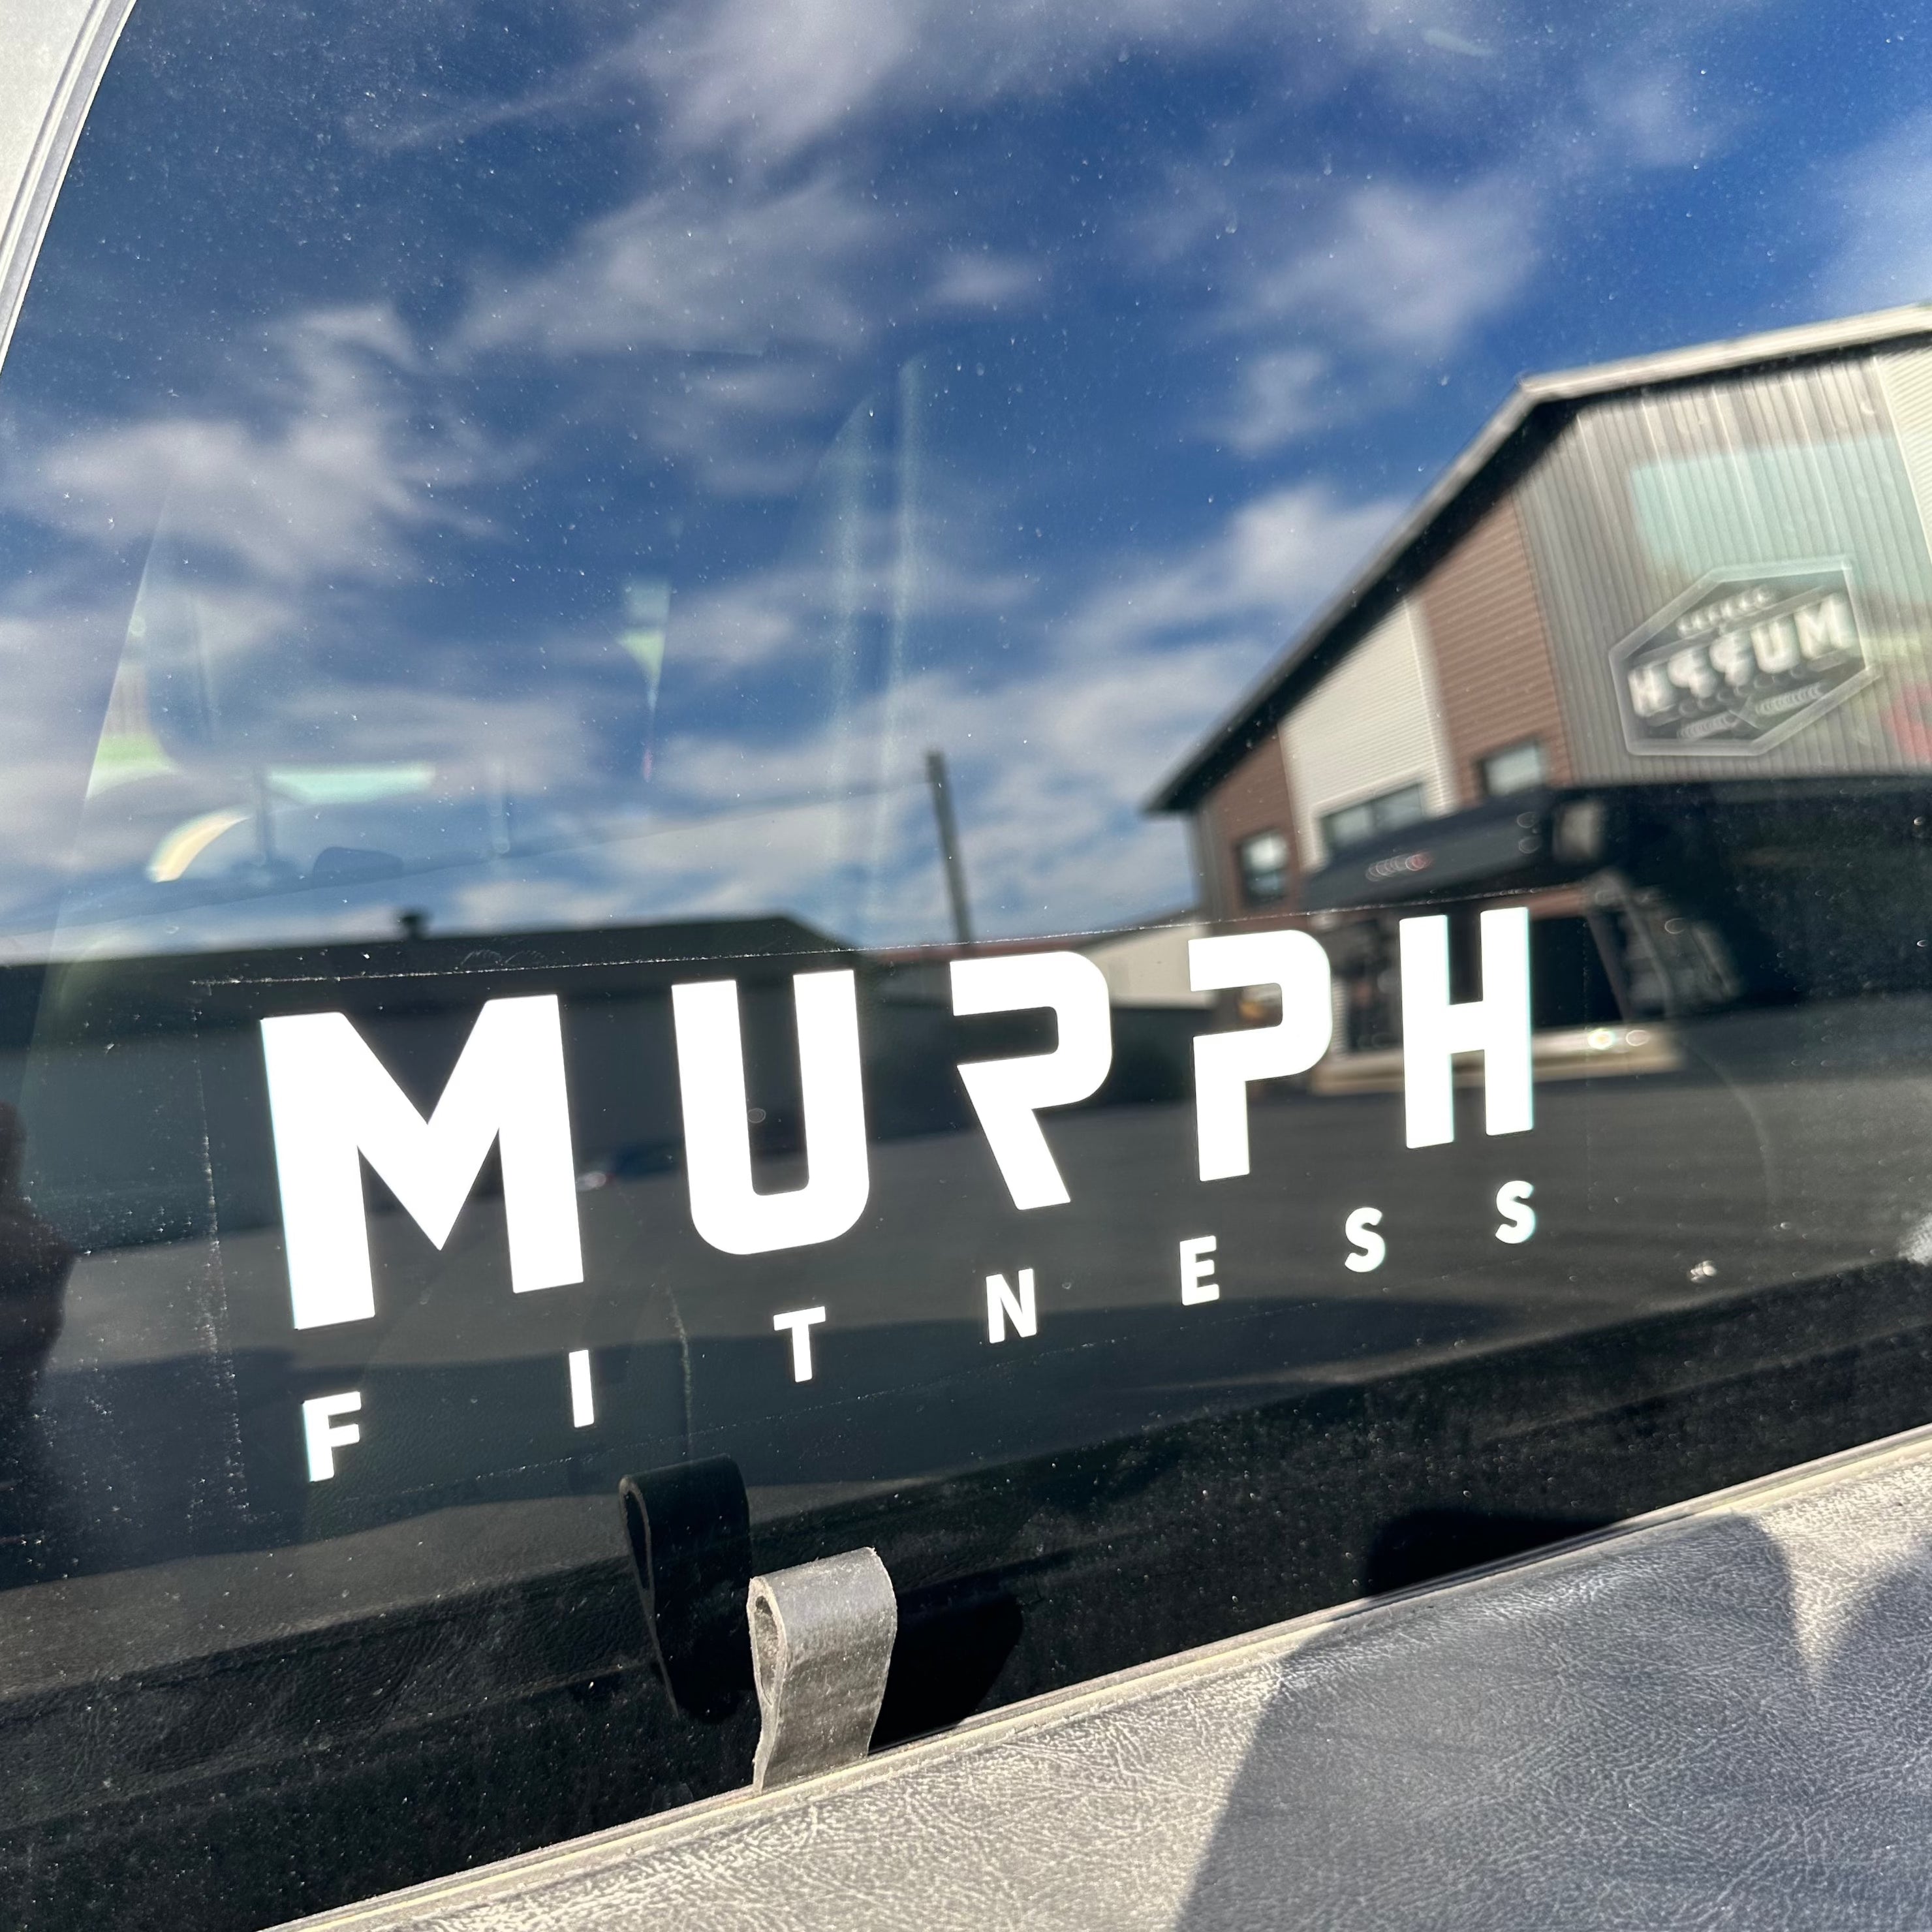 Autocollants pour vitre automobile - MURPH Fitness